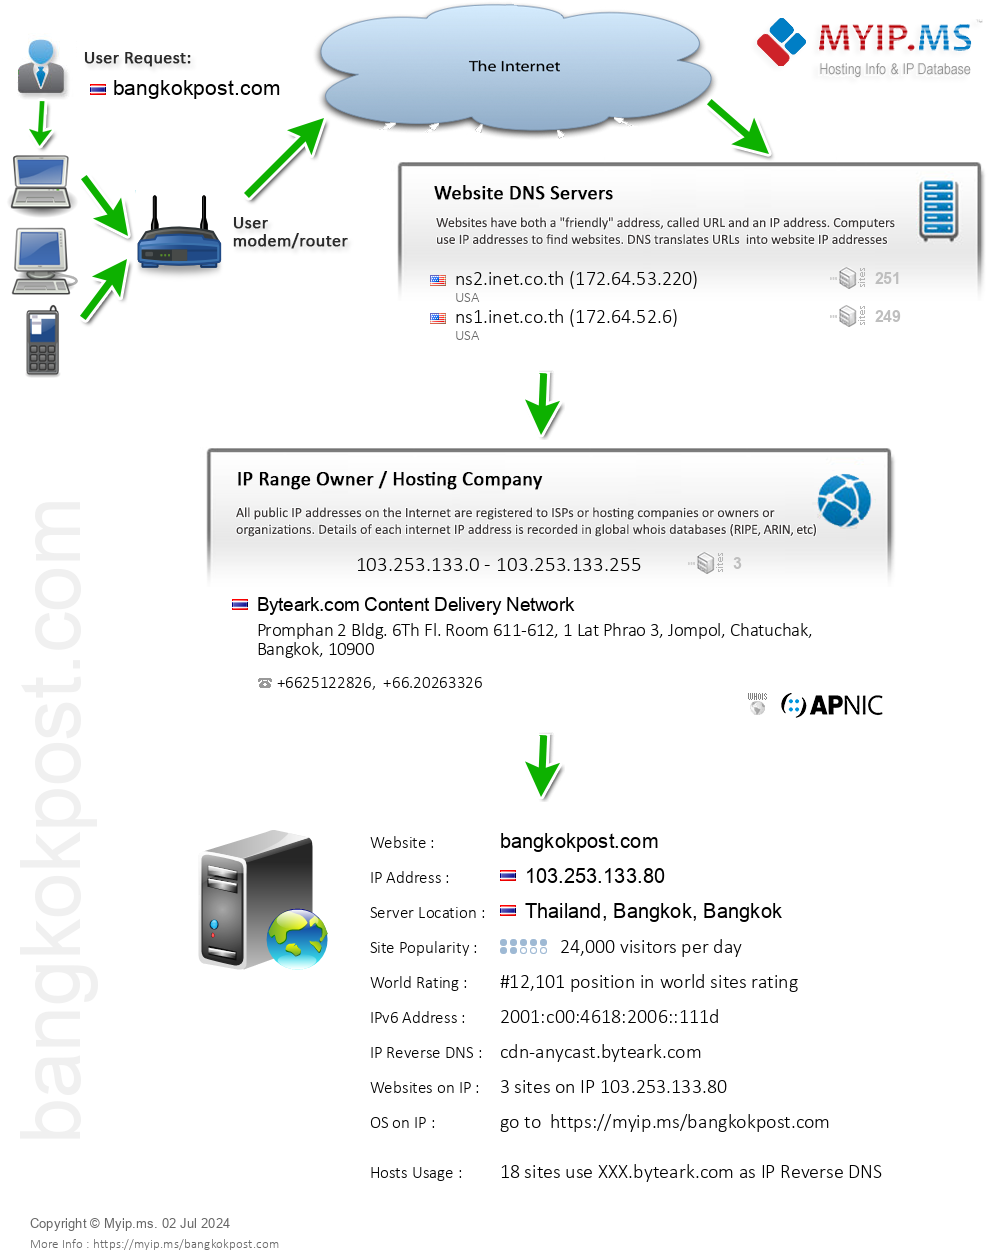 Bangkokpost.com - Website Hosting Visual IP Diagram